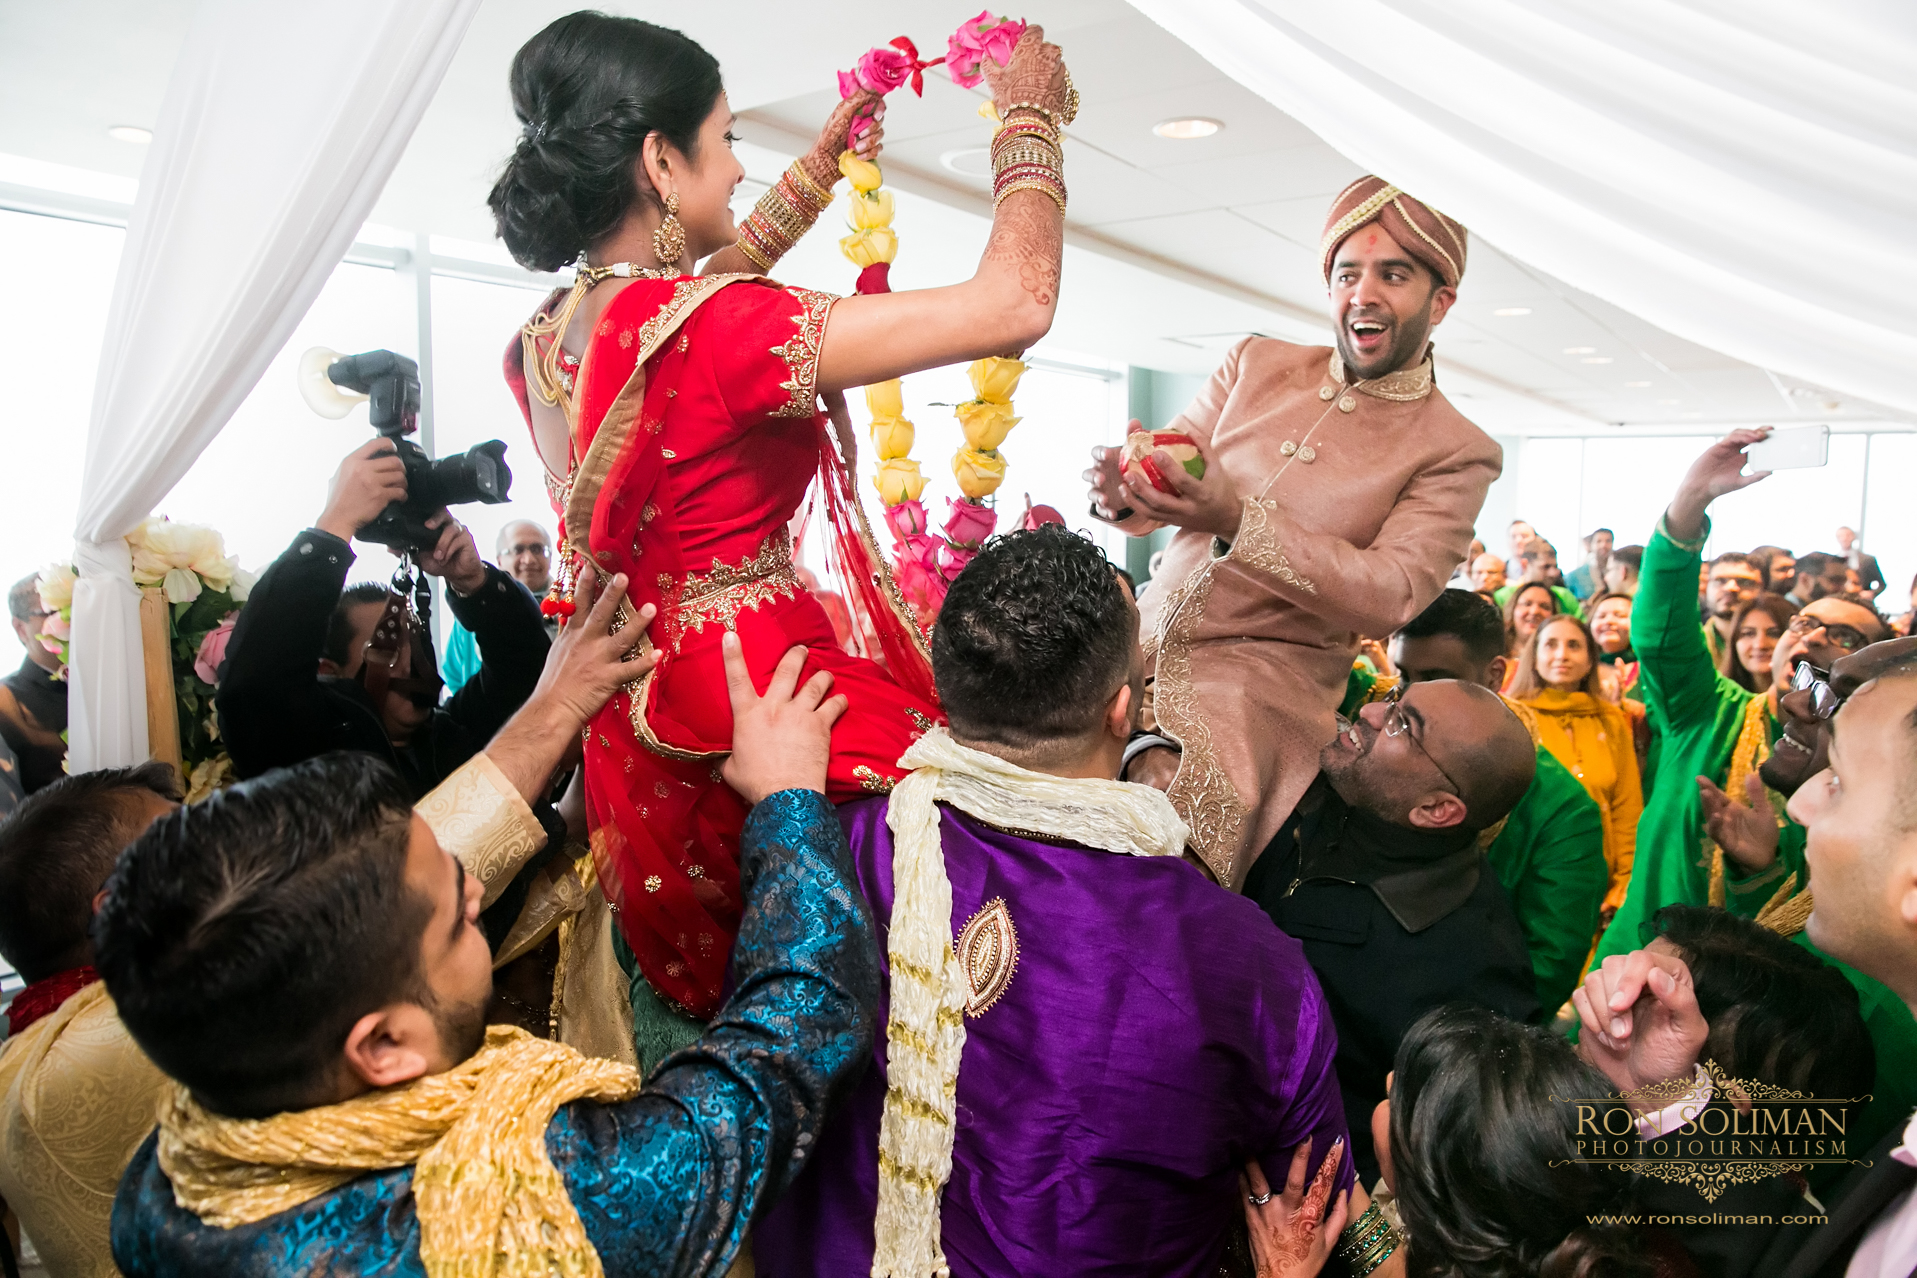 Hindu wedding ceremory photos